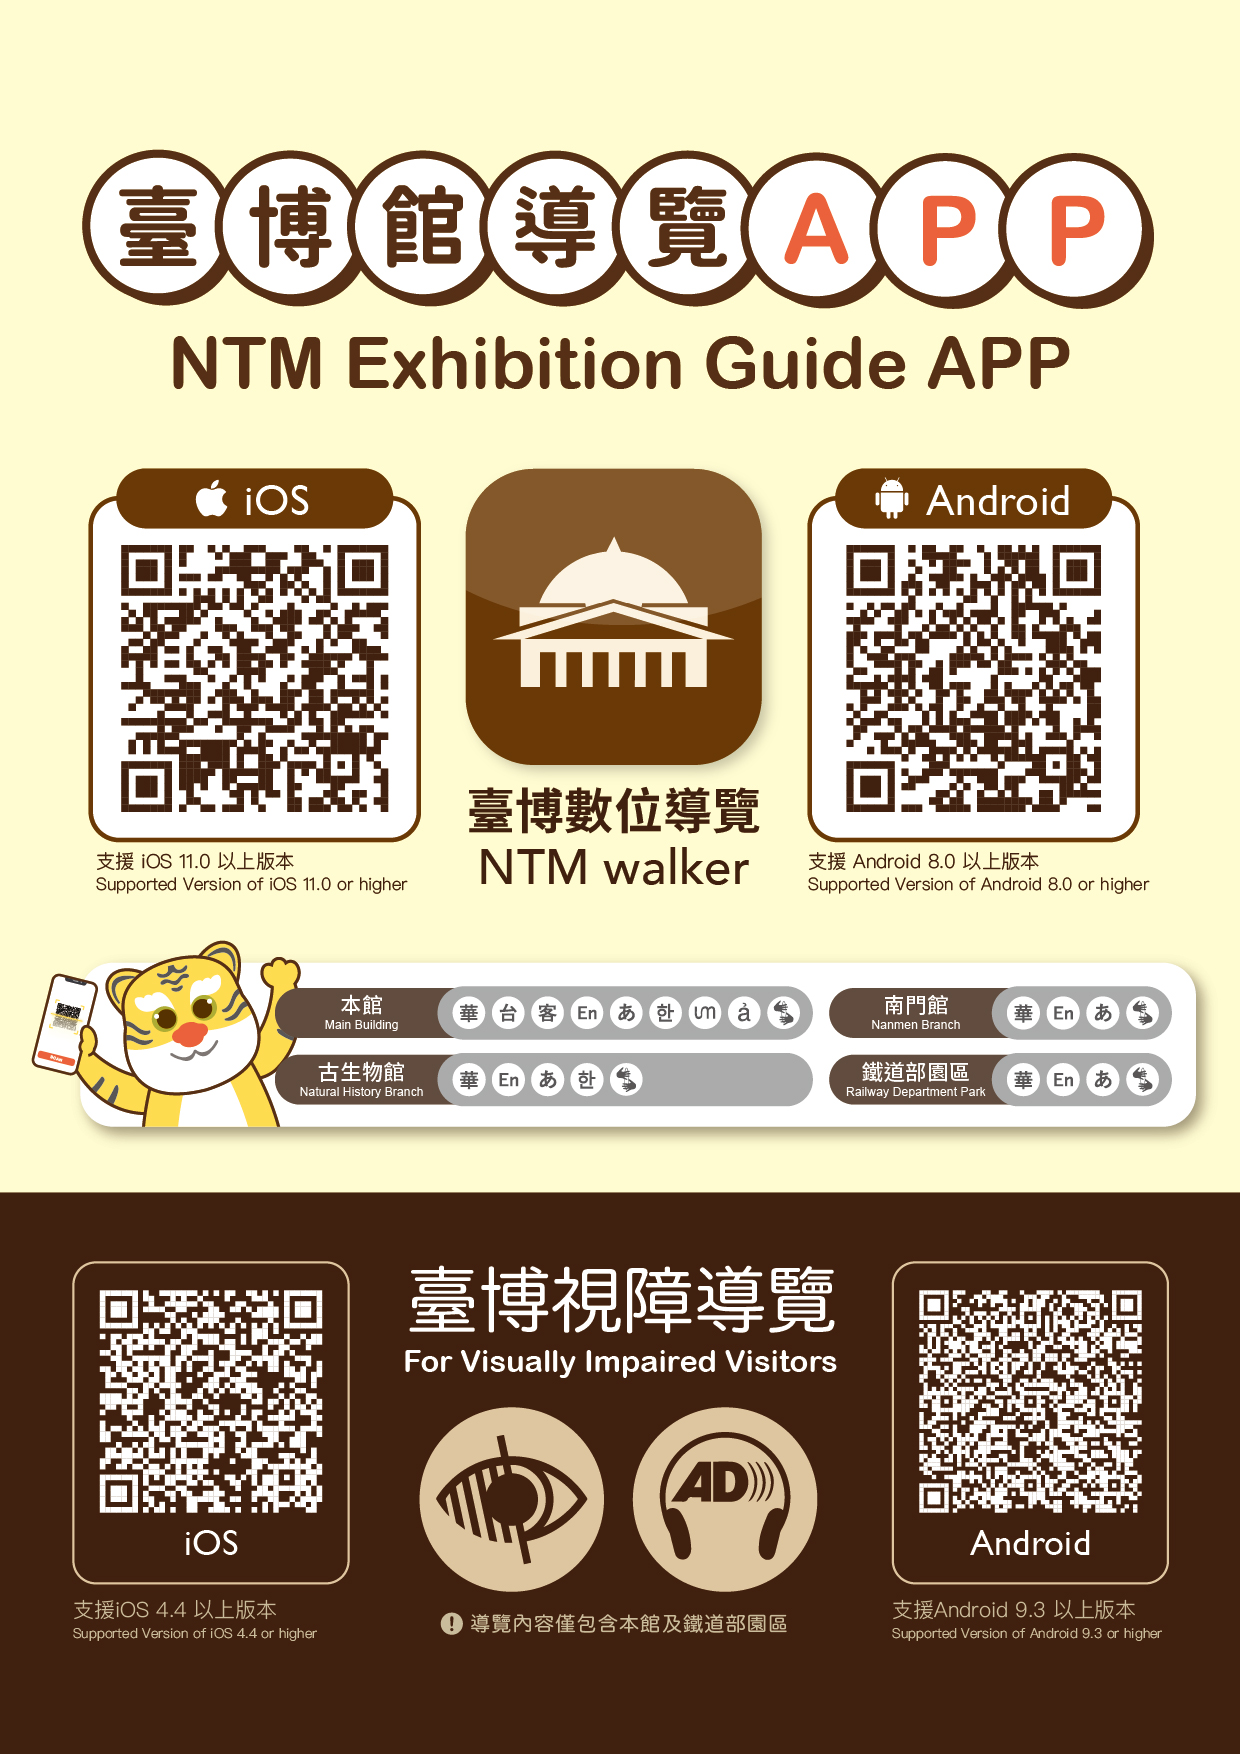 NTM Tour Guide App                                                                                                                                                                                      